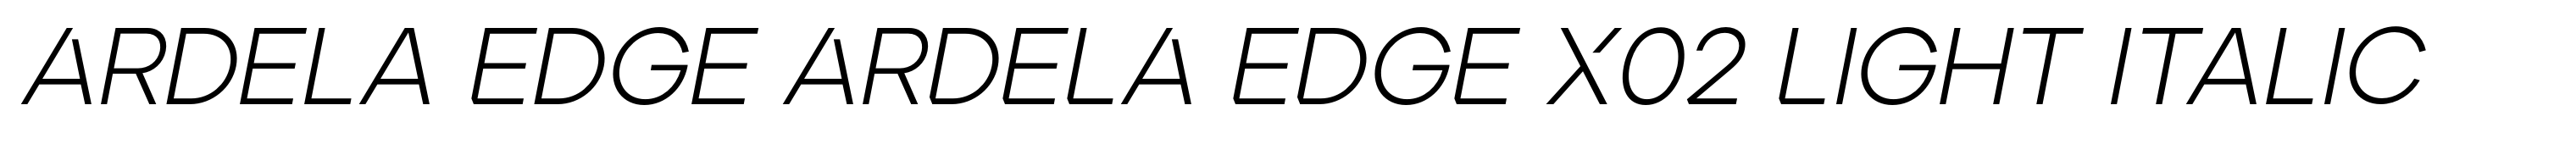 Ardela Edge ARDELA EDGE X02 Light Italic